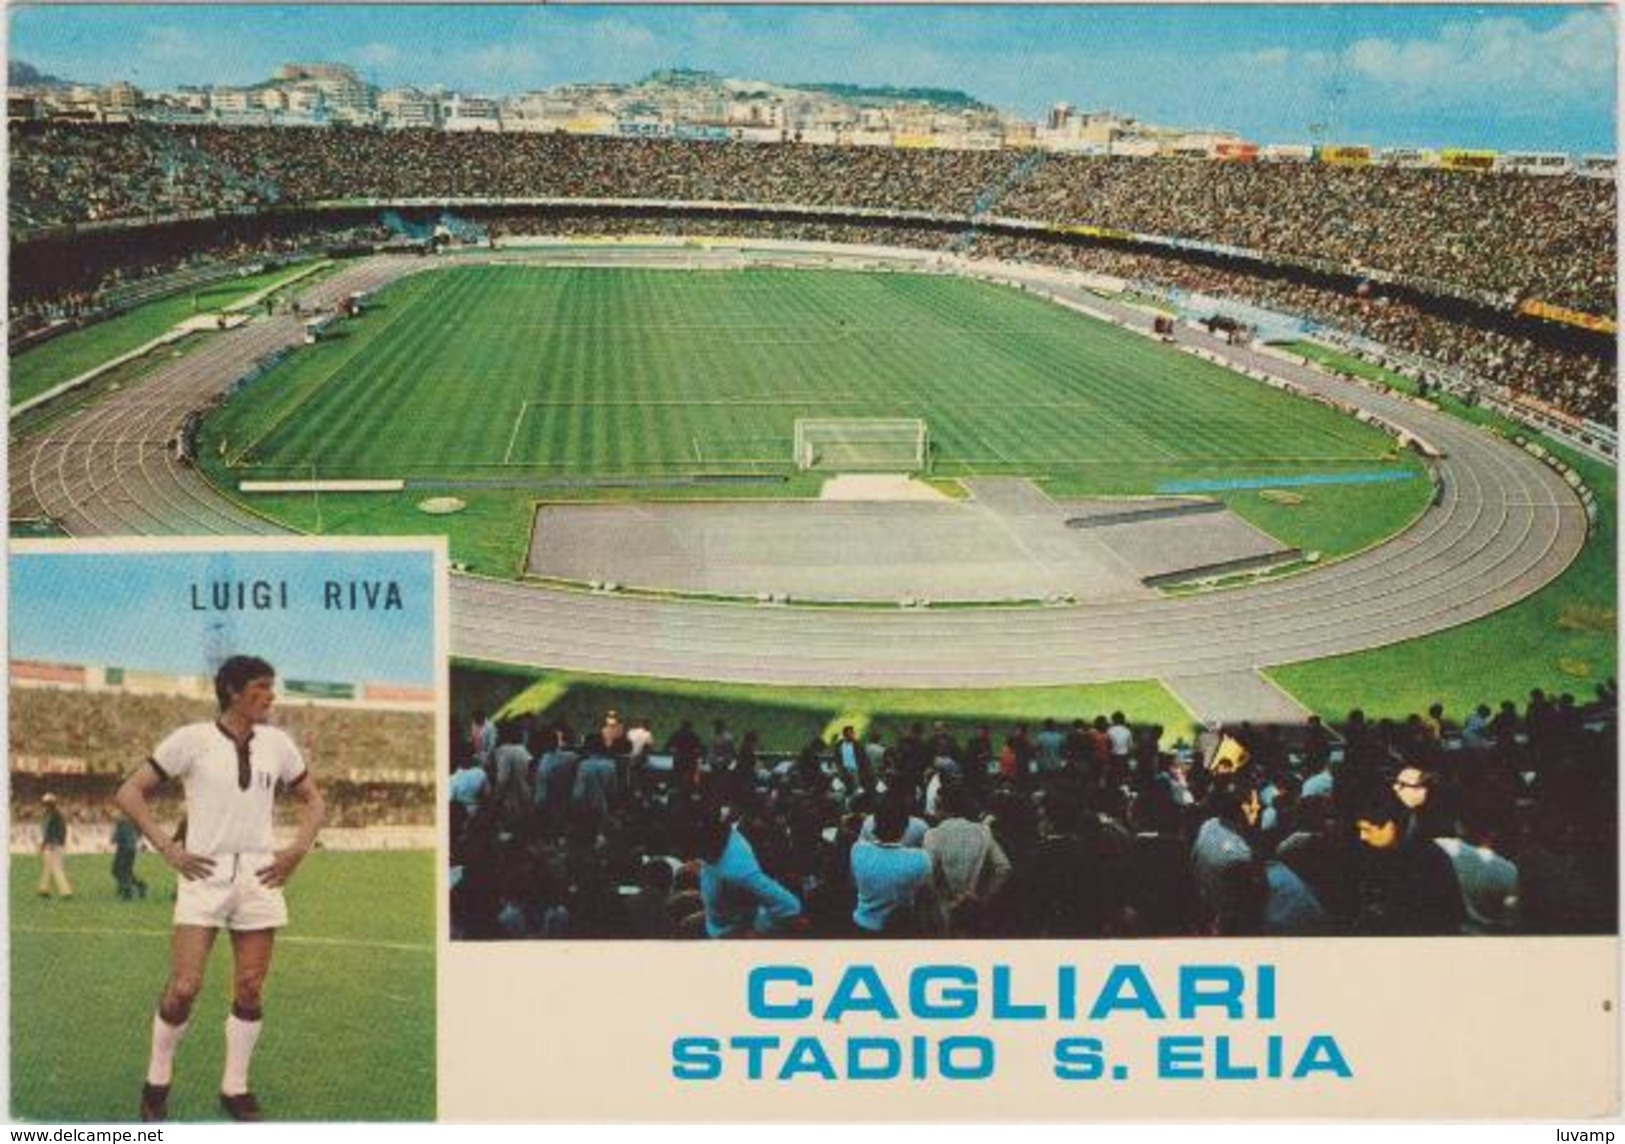 STADIO  SAN ELIA (  CAGLIARI) -F/G  COLORE  (271014) - Calcio